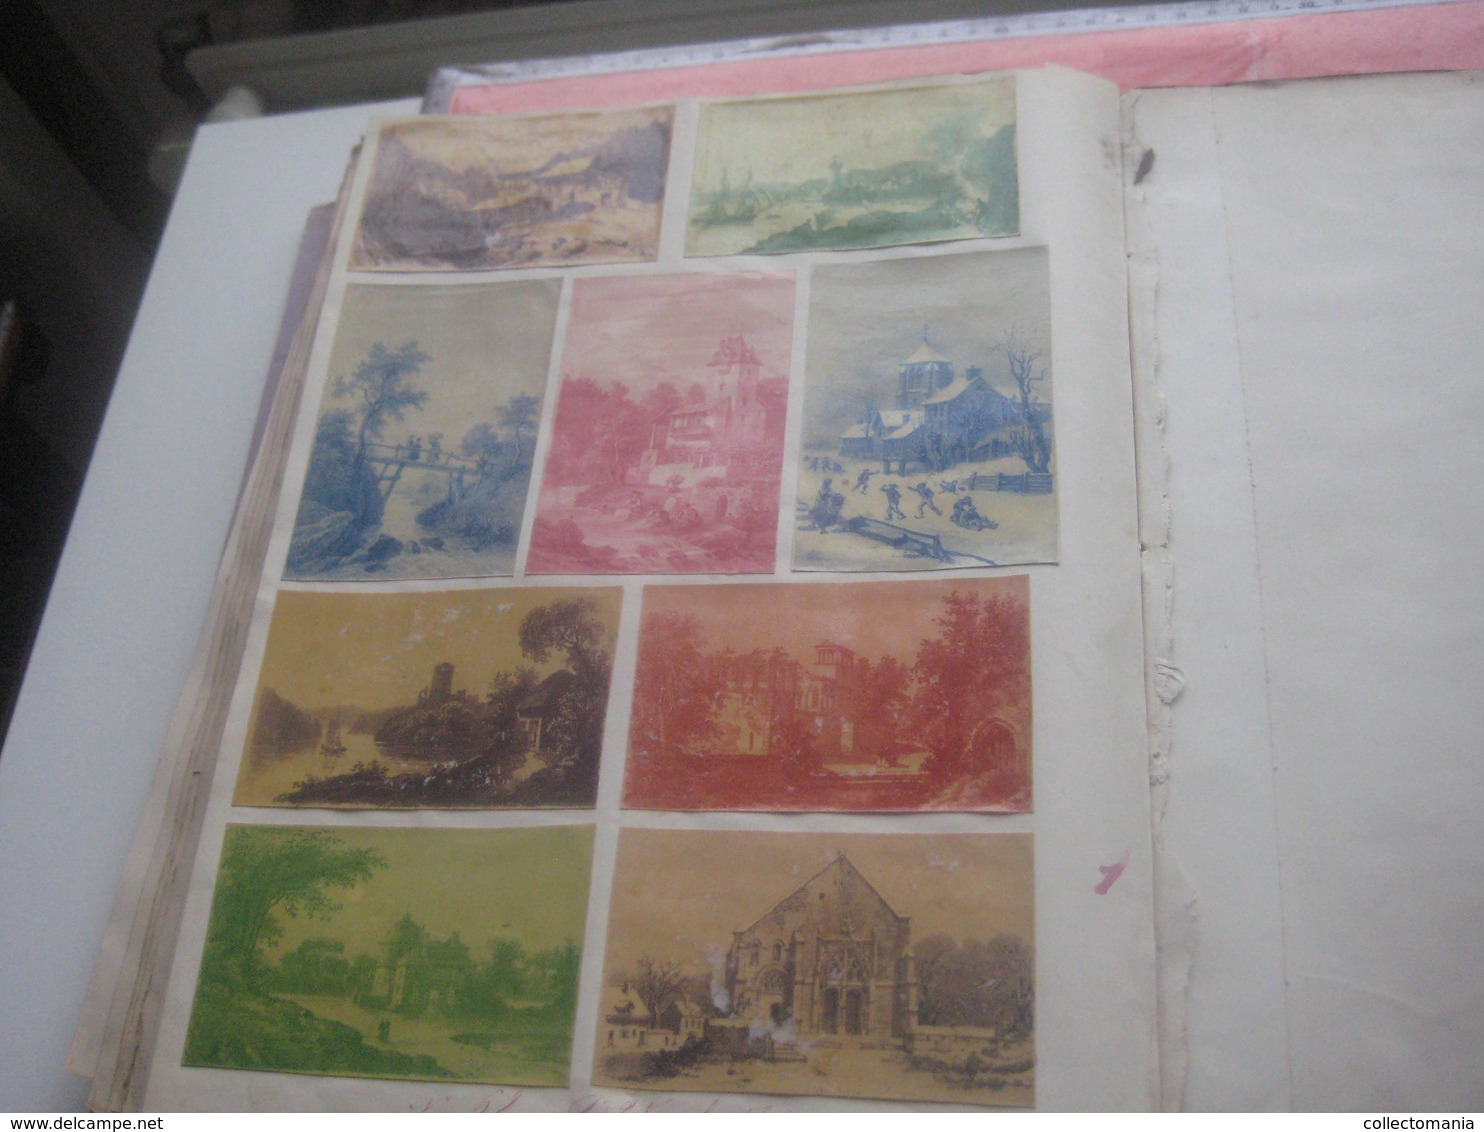 DOPTER album de l'imprimeur, seulement ET toutes ces DECALCOMANIES de 1870 à c1880 notices nummérotés RRR